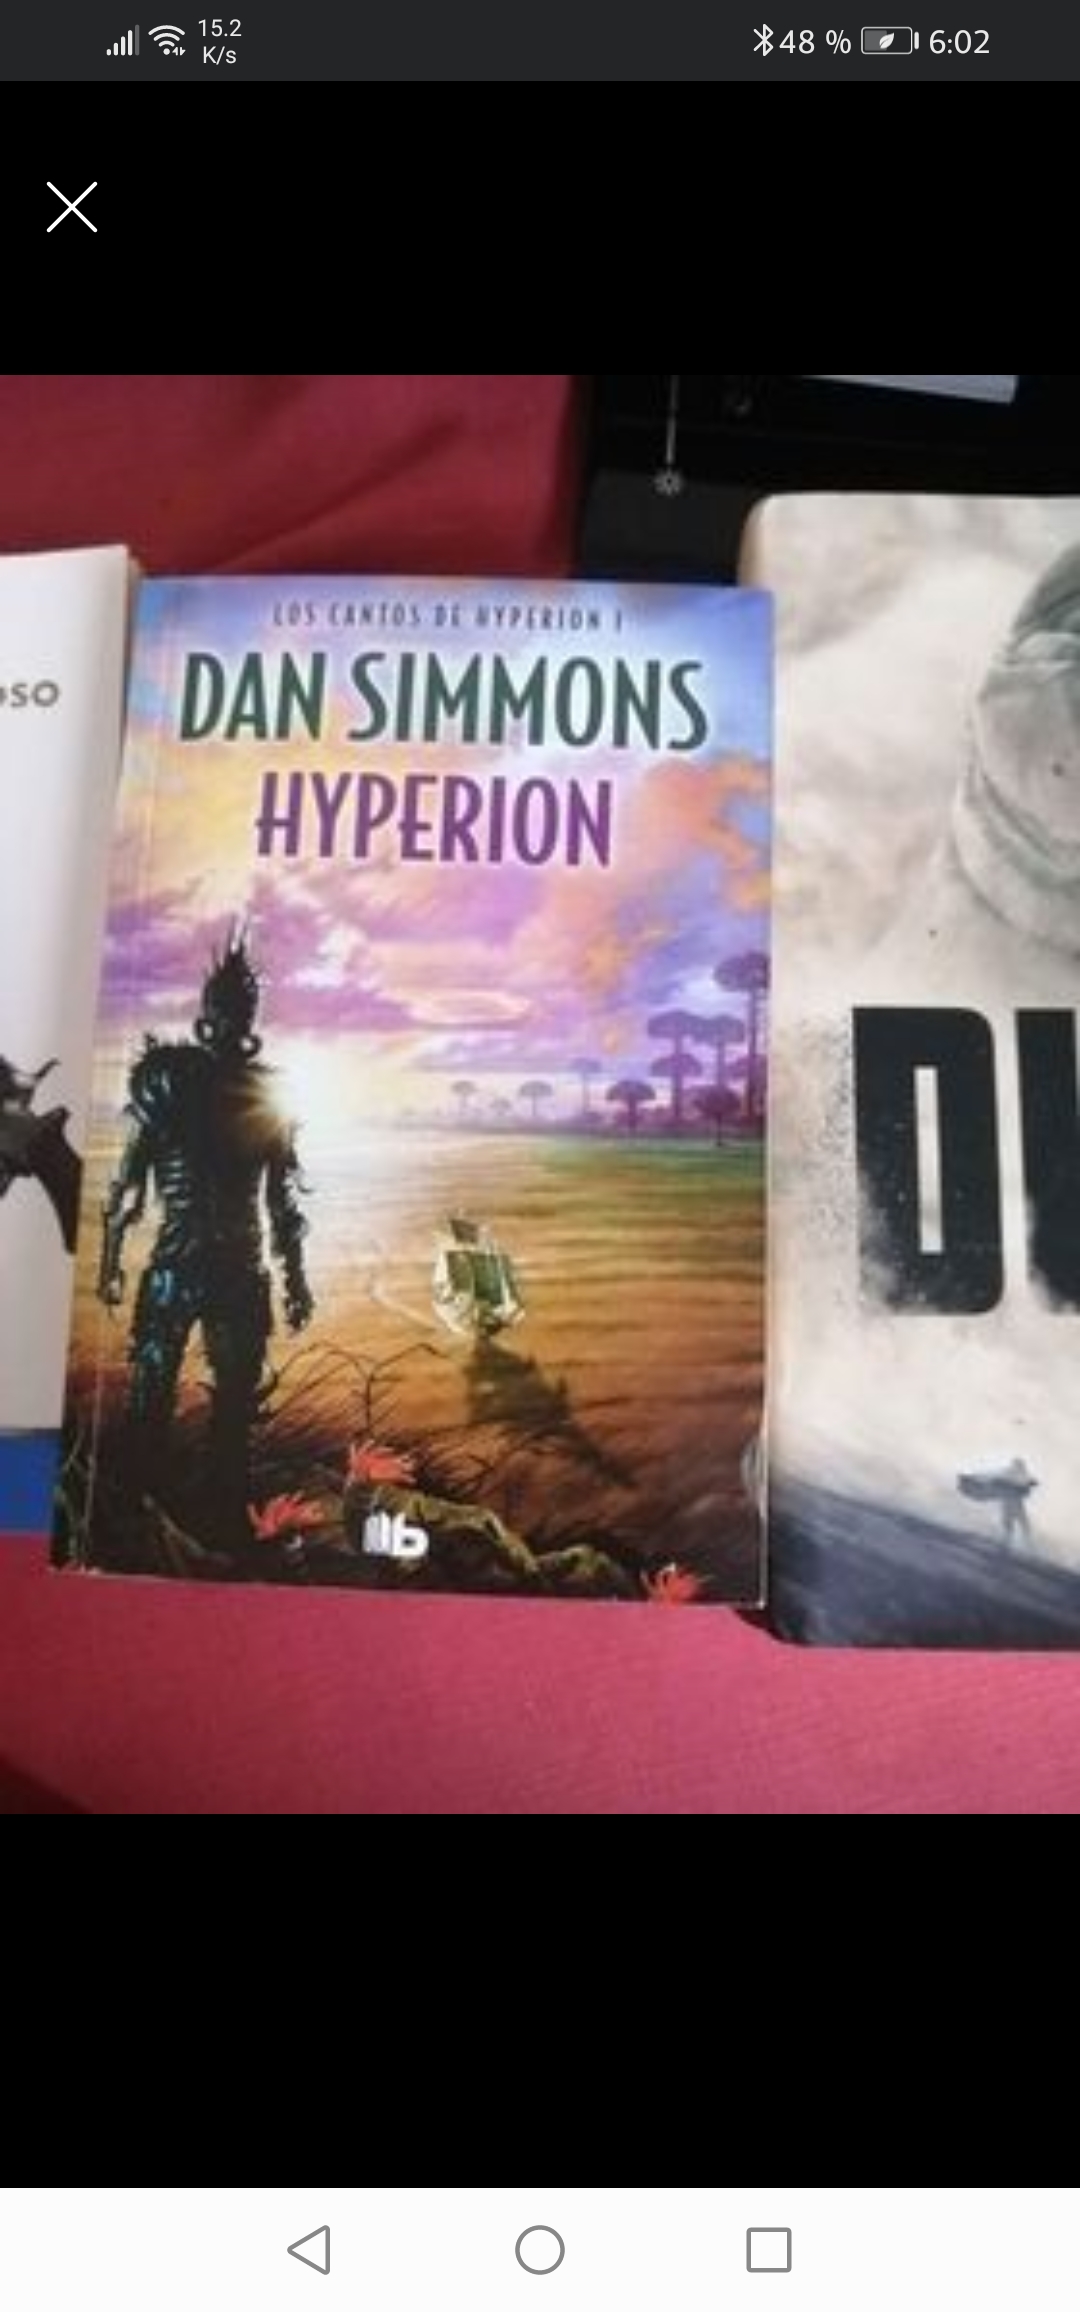 libros y revistas - Cantos de Hyperion 0